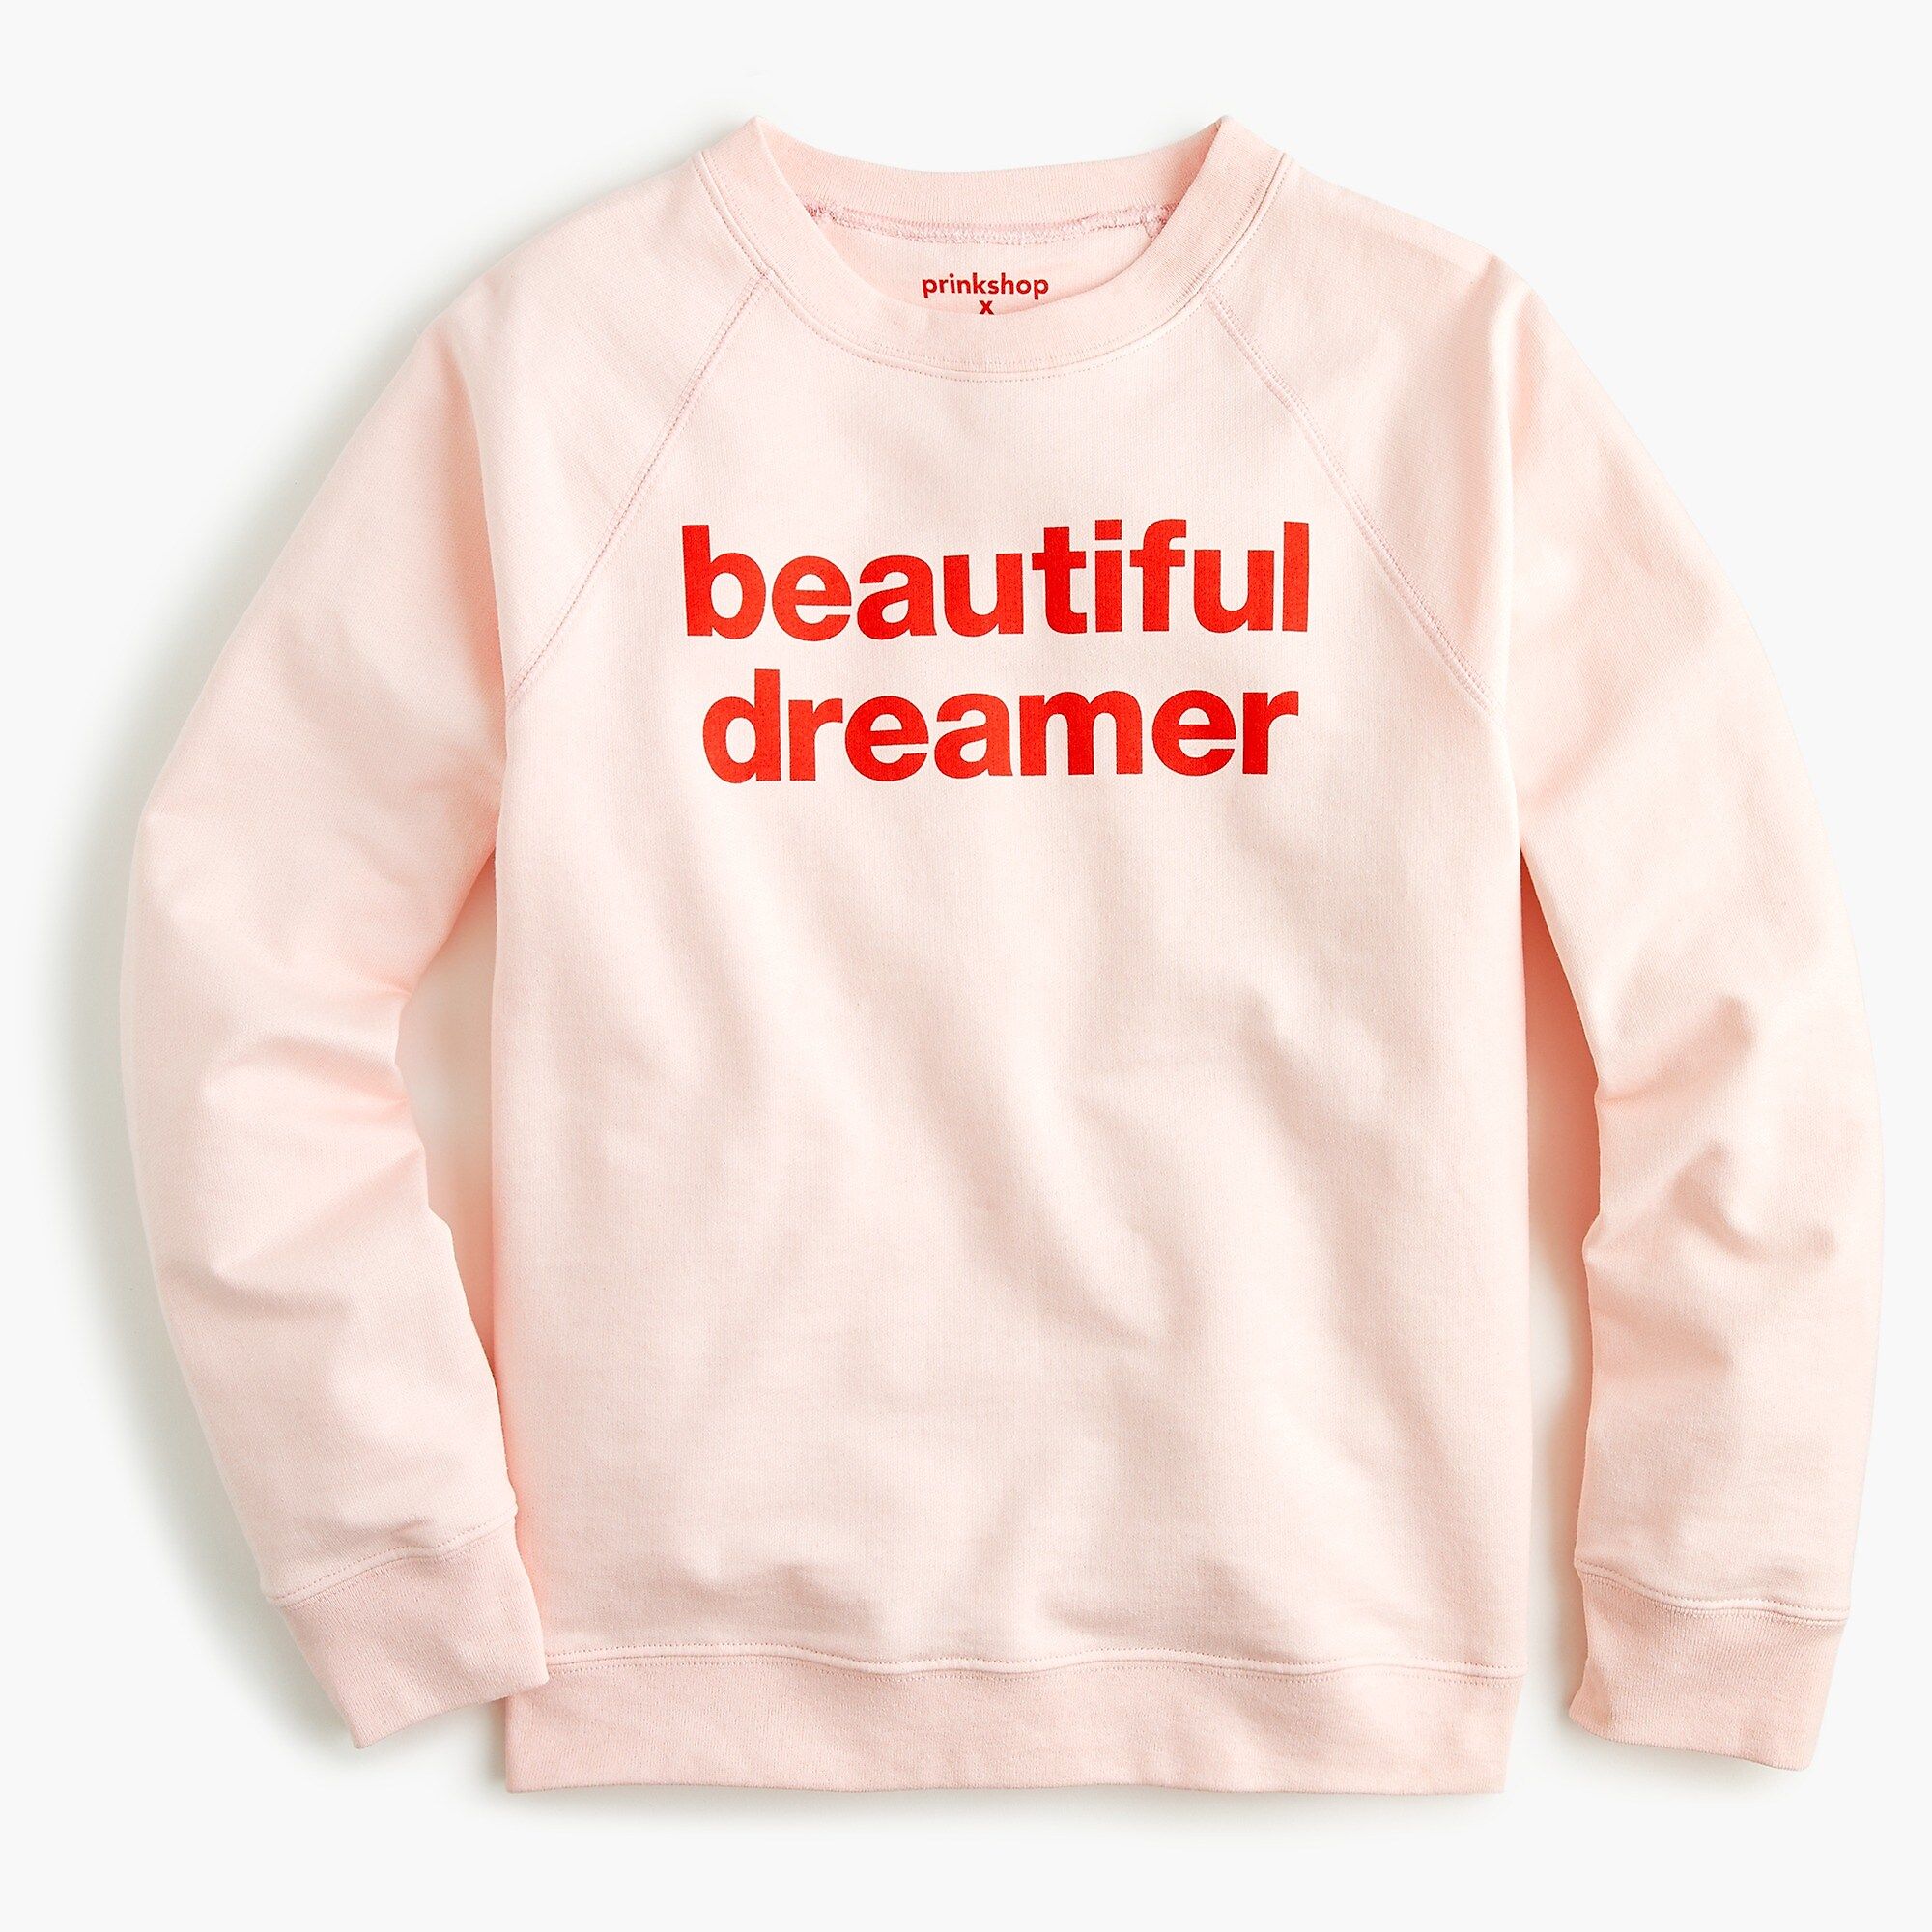 J.Crew X prinkshop "Beautiful Dreamer" sweatshirt | J.Crew US